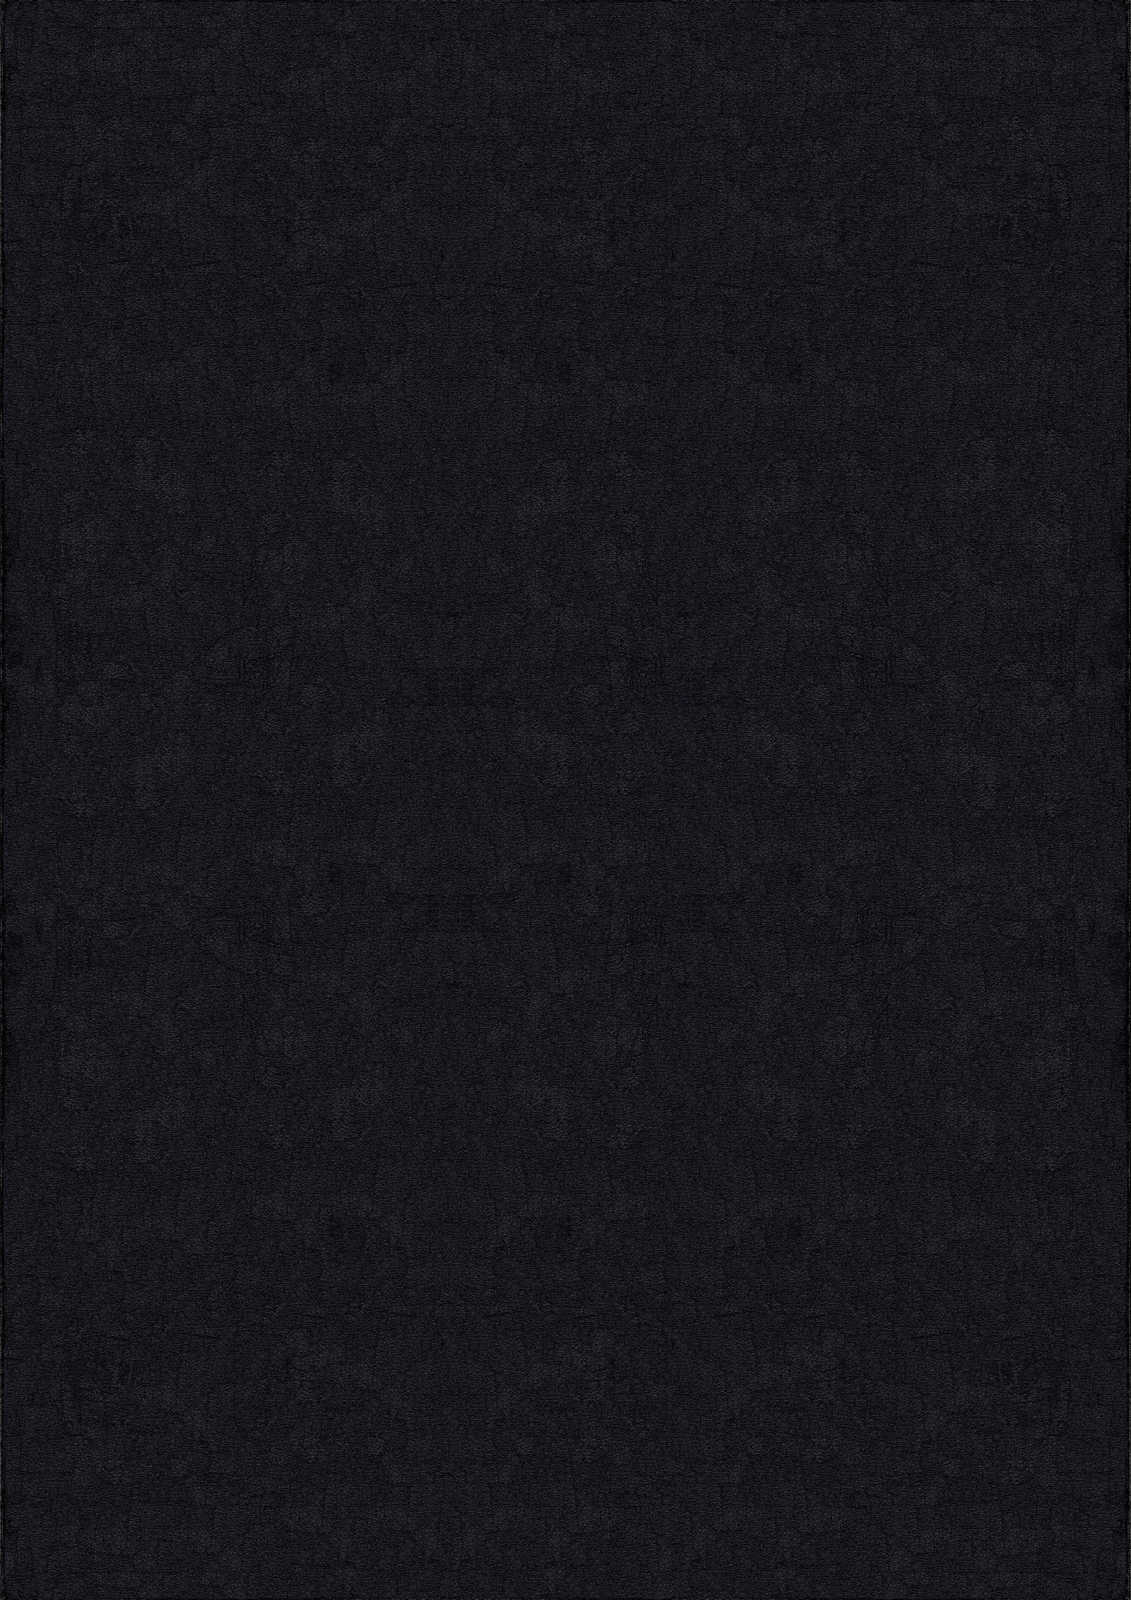             Samtiger Hochflor Teppich in Schwarz – 230 x 160 cm
        